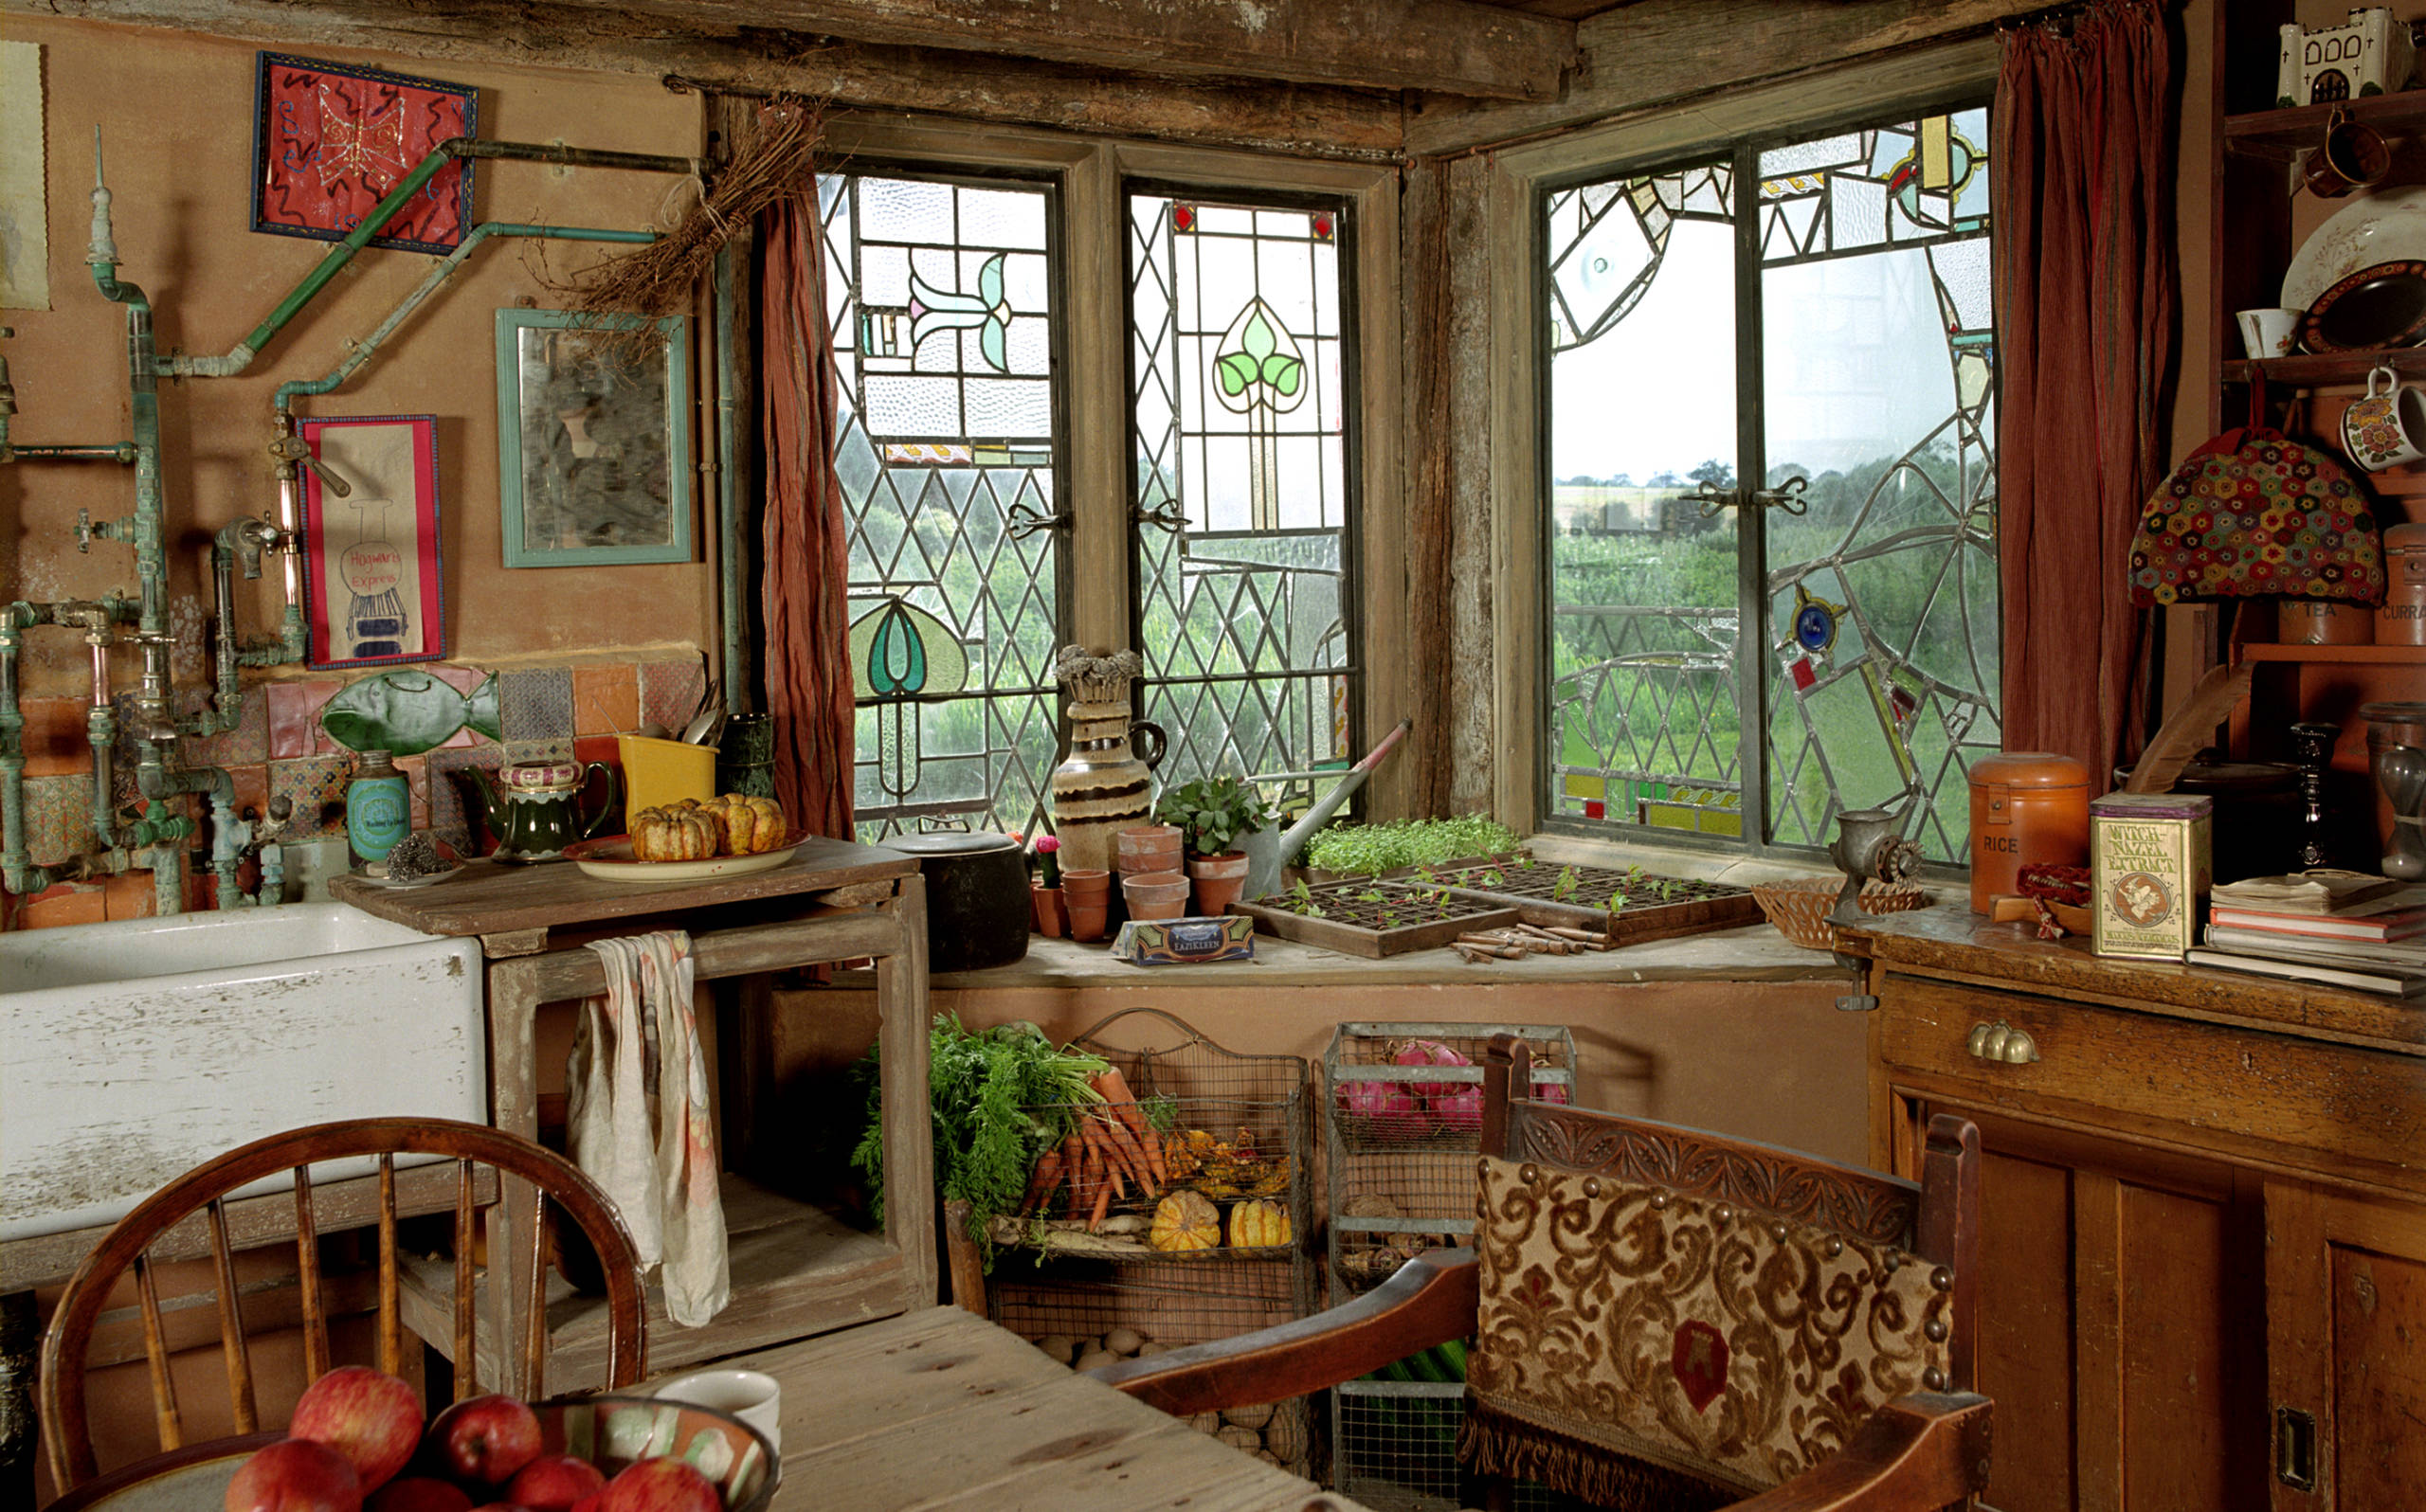 WB-F2-the-burrow-kitchen-interior-web-landscape